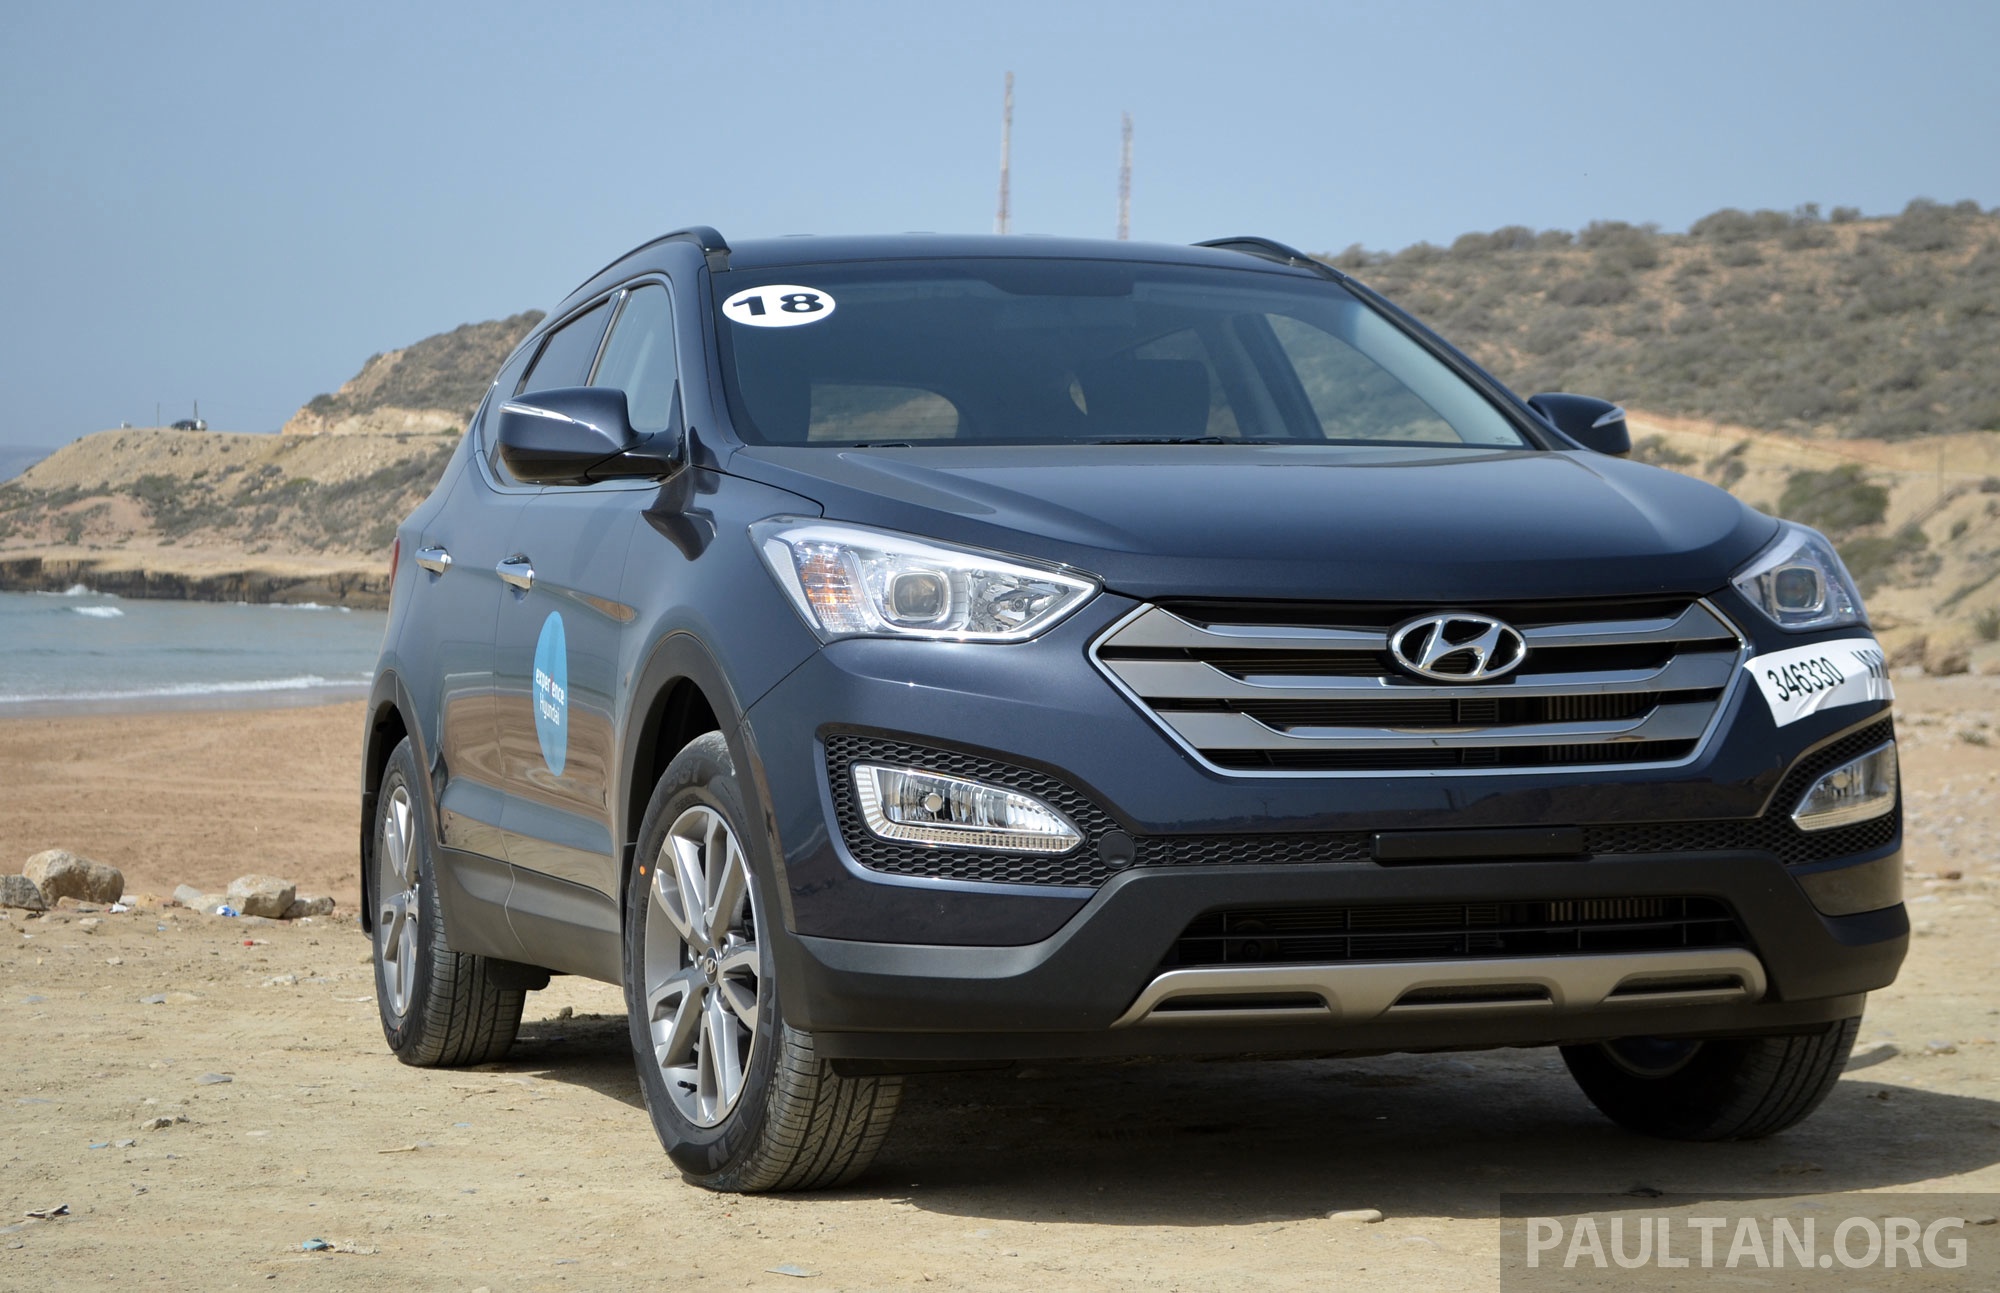 Hyundai Santa Fe 2.2 CRDI test drive review